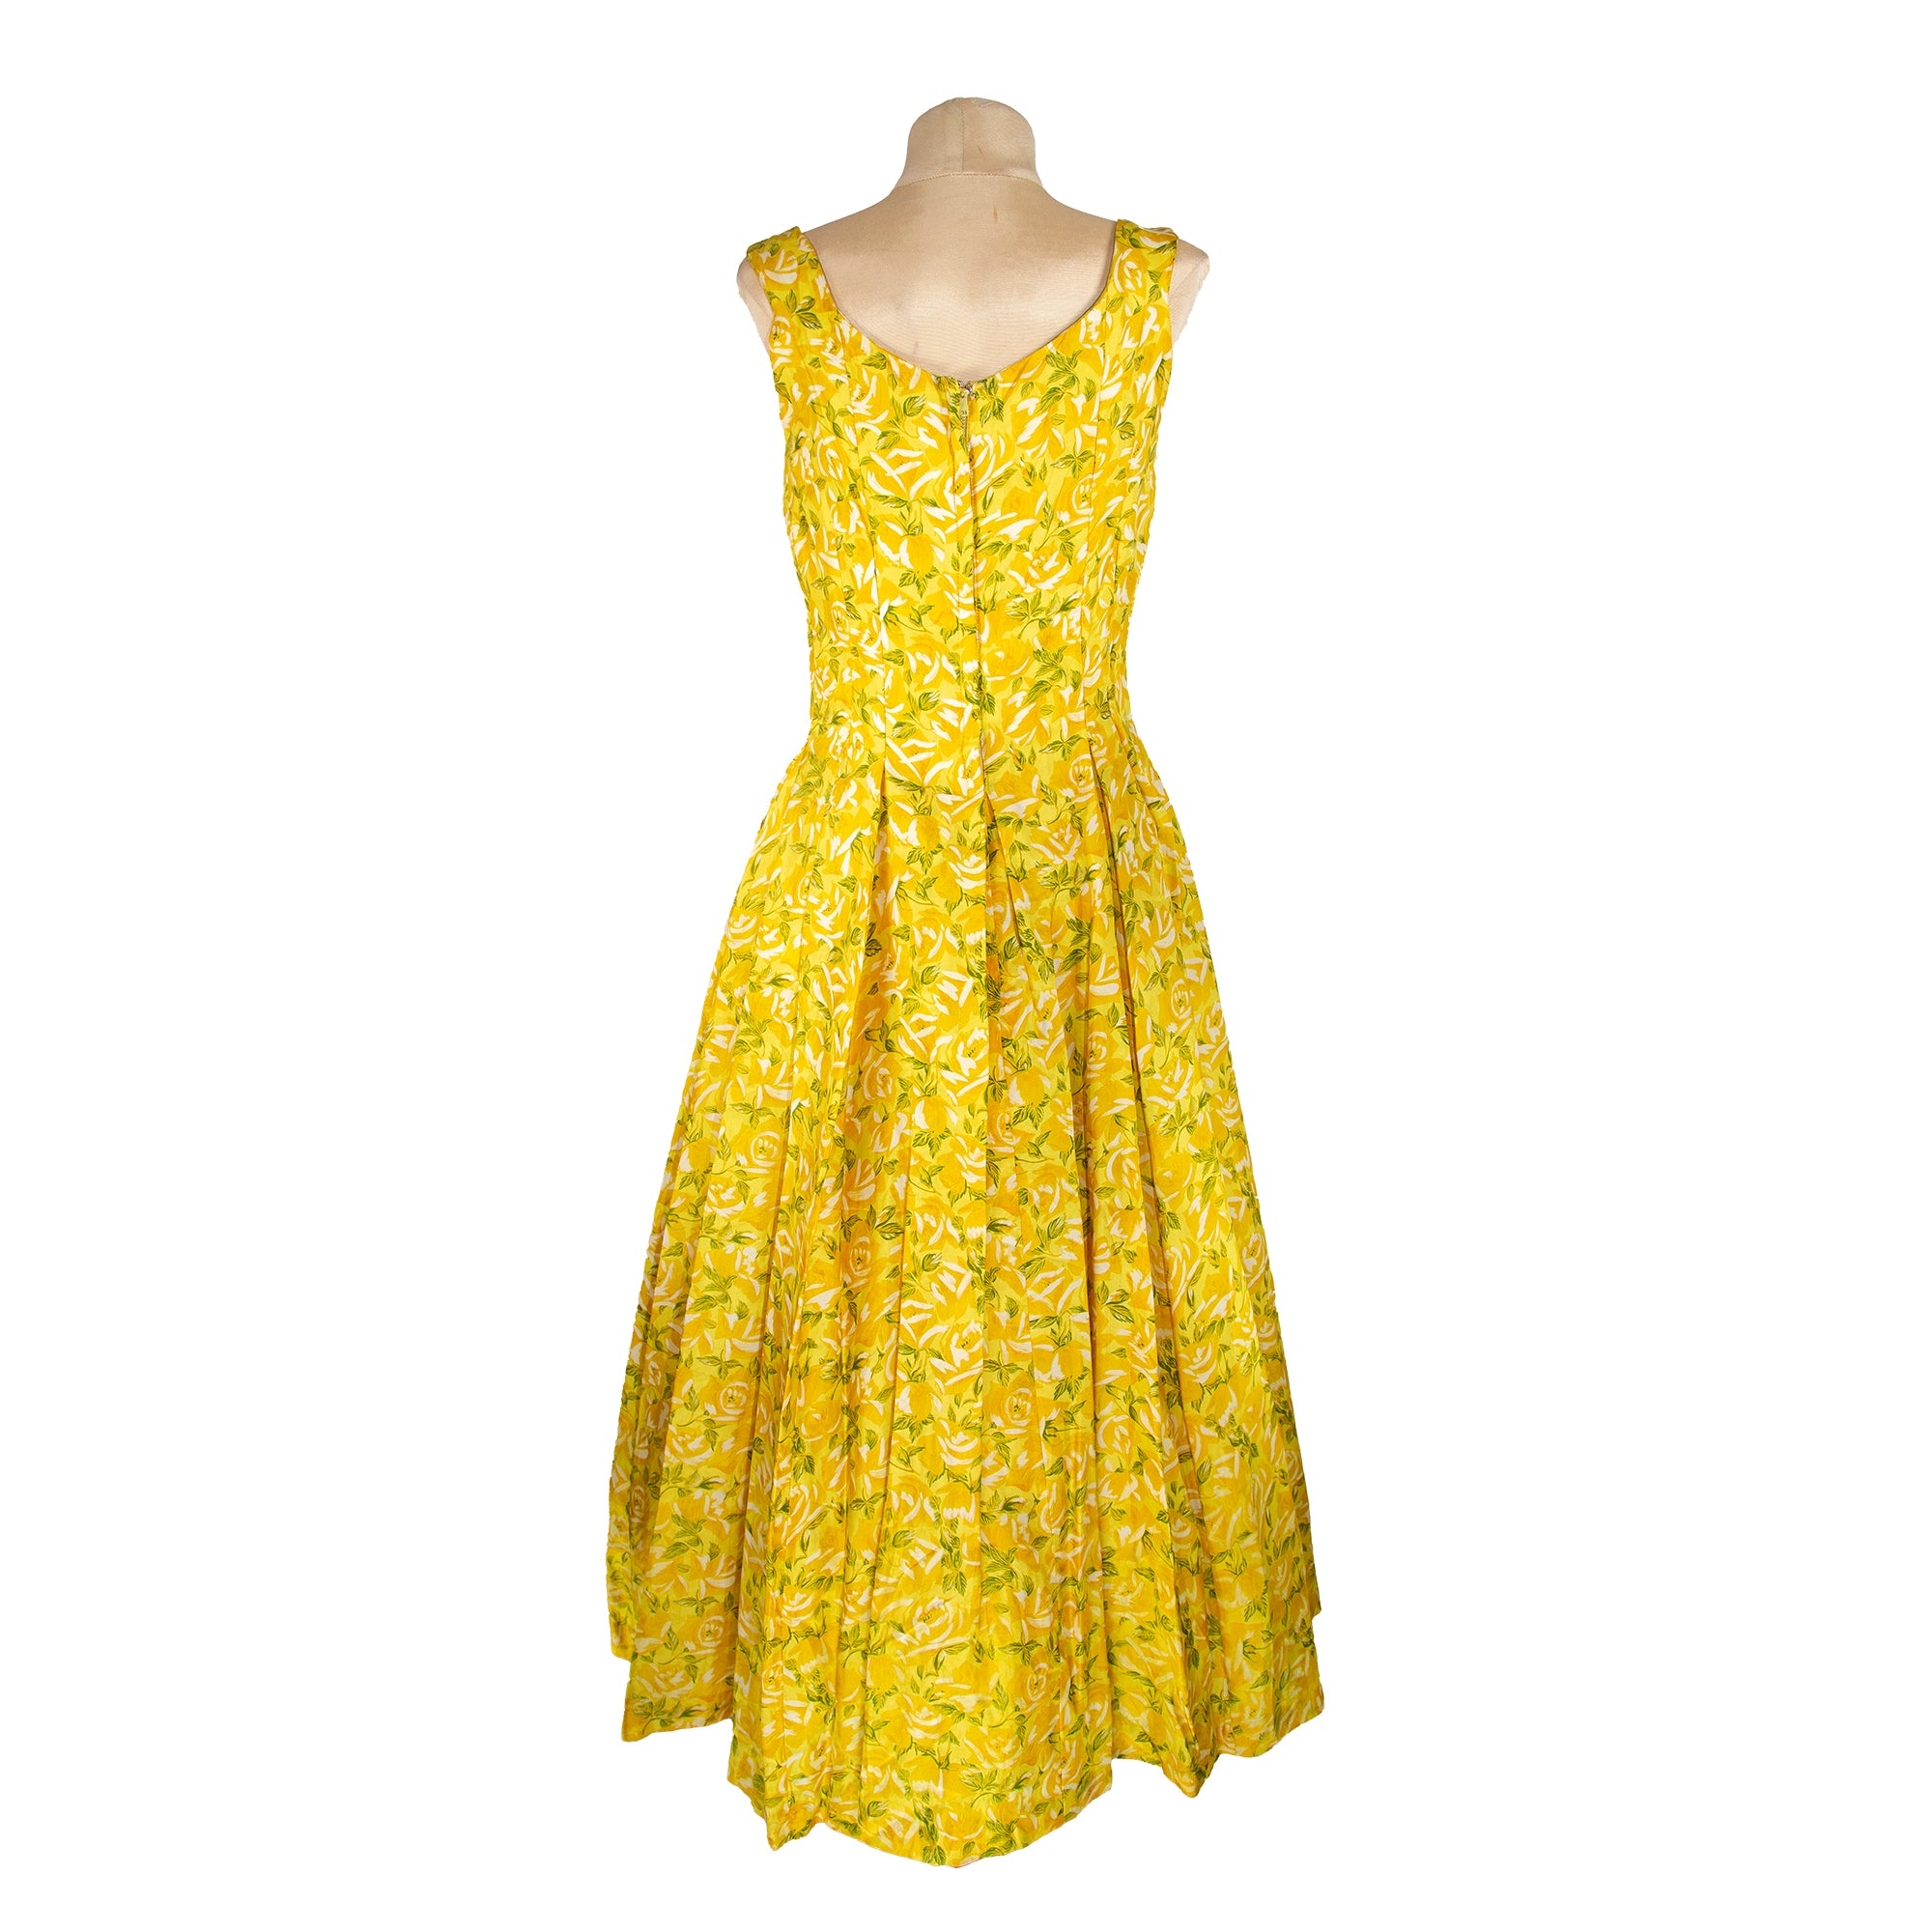 1950s Suzy Perette Yellow Rose Garden Silk Dress⁠